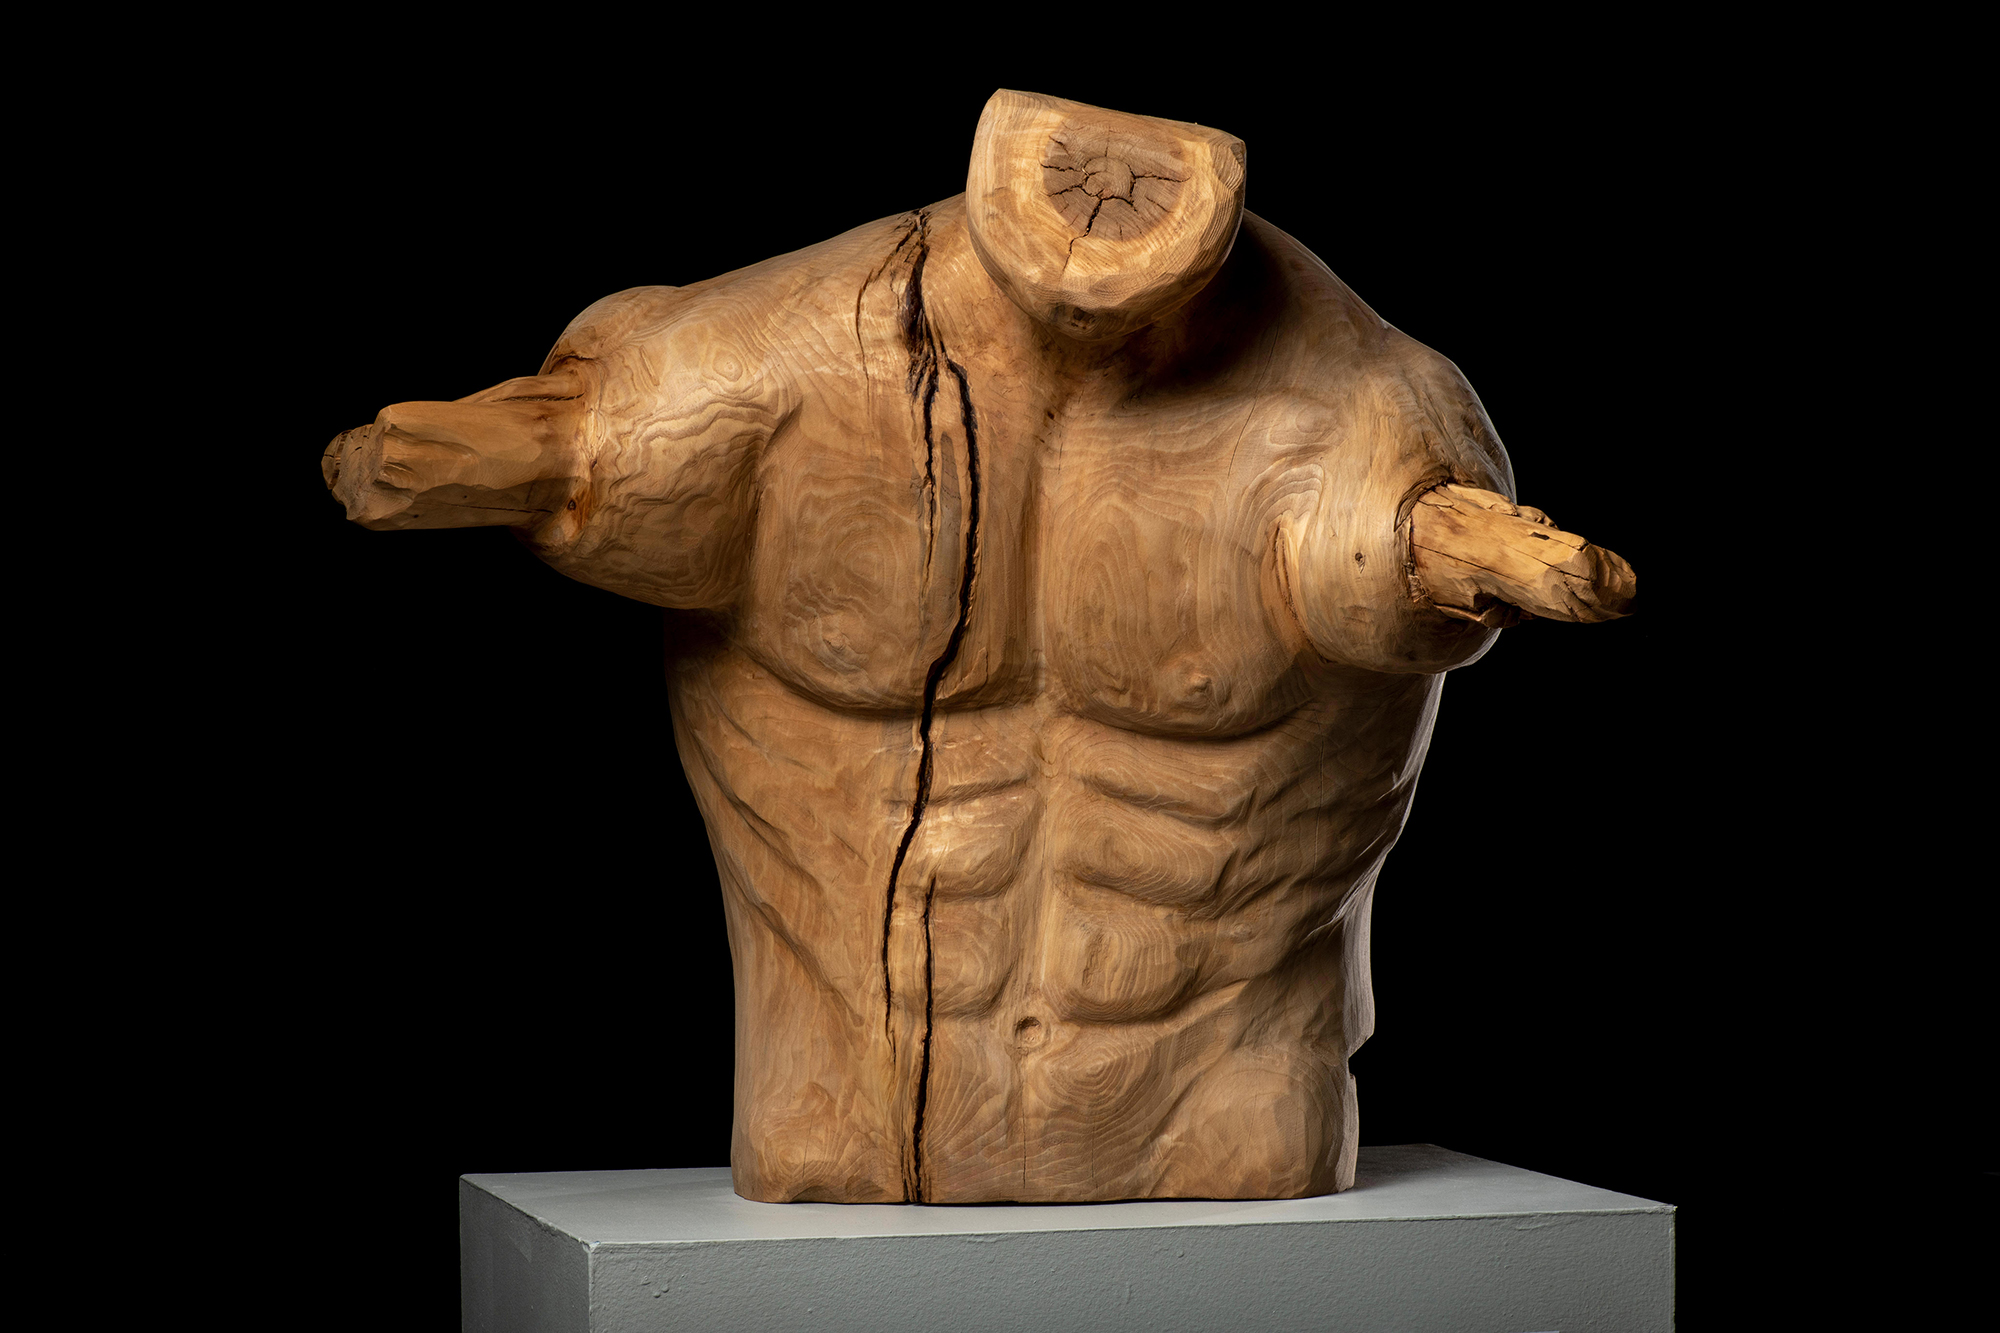 Natural Limbs: The man by Deborah Heyden [Wood Sculpture, 2017]